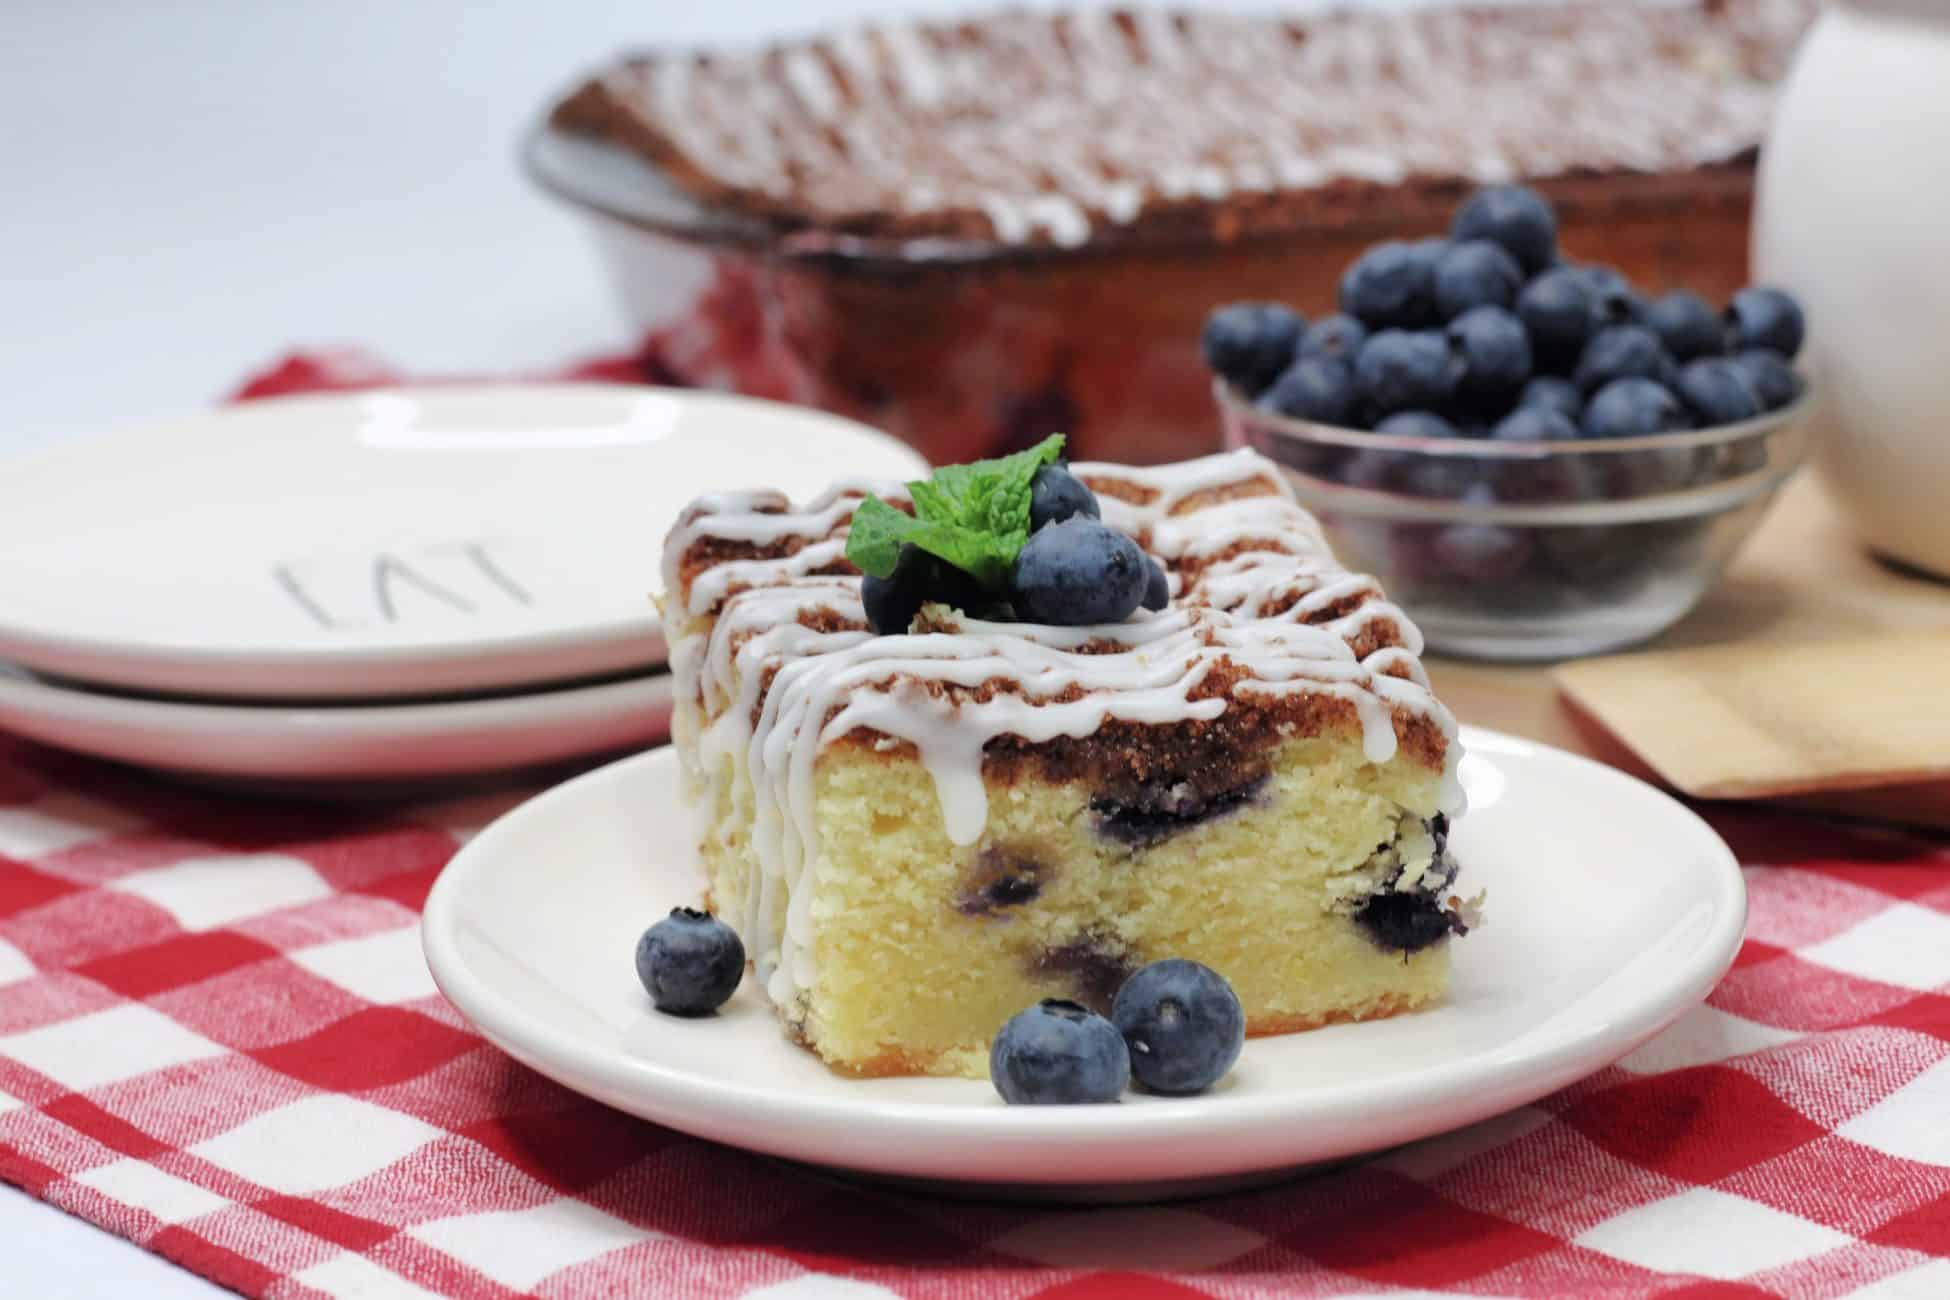 Easy Lemon Blueberry Breakfast Cake Recipe